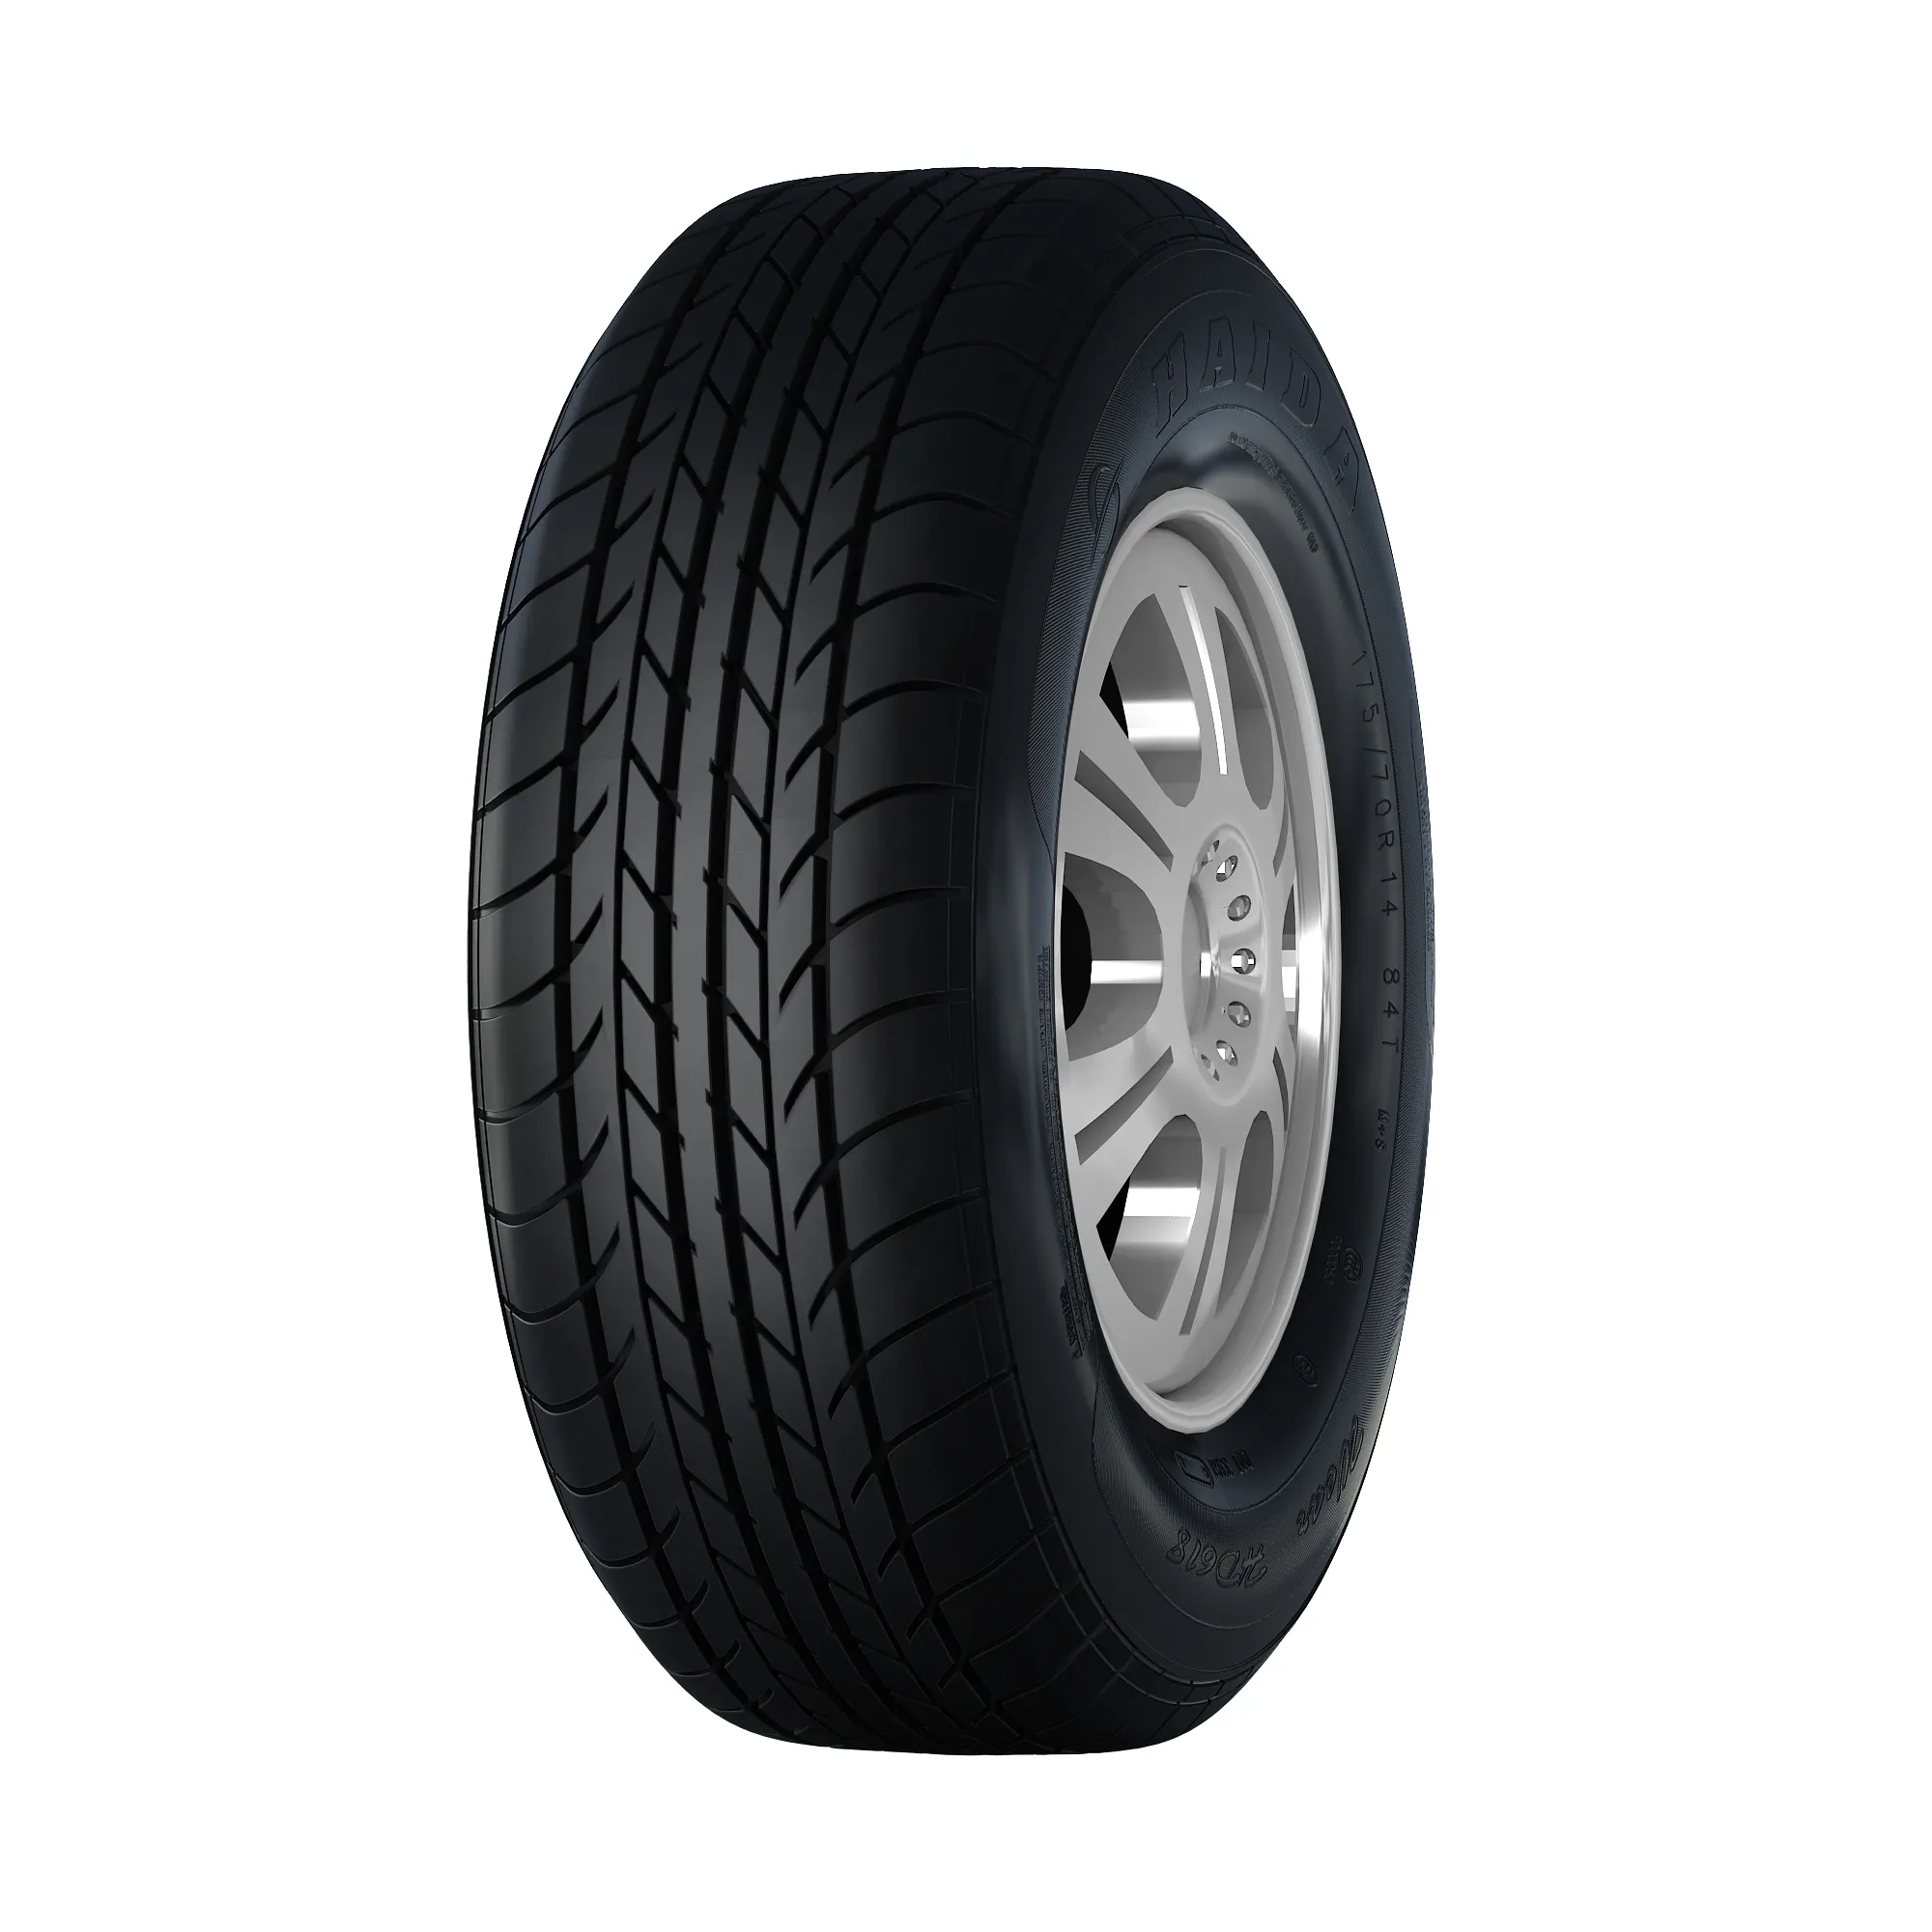 165R13LT 8PR रेडियल टायर डिजाइन कार टायर बिक्री के लिए